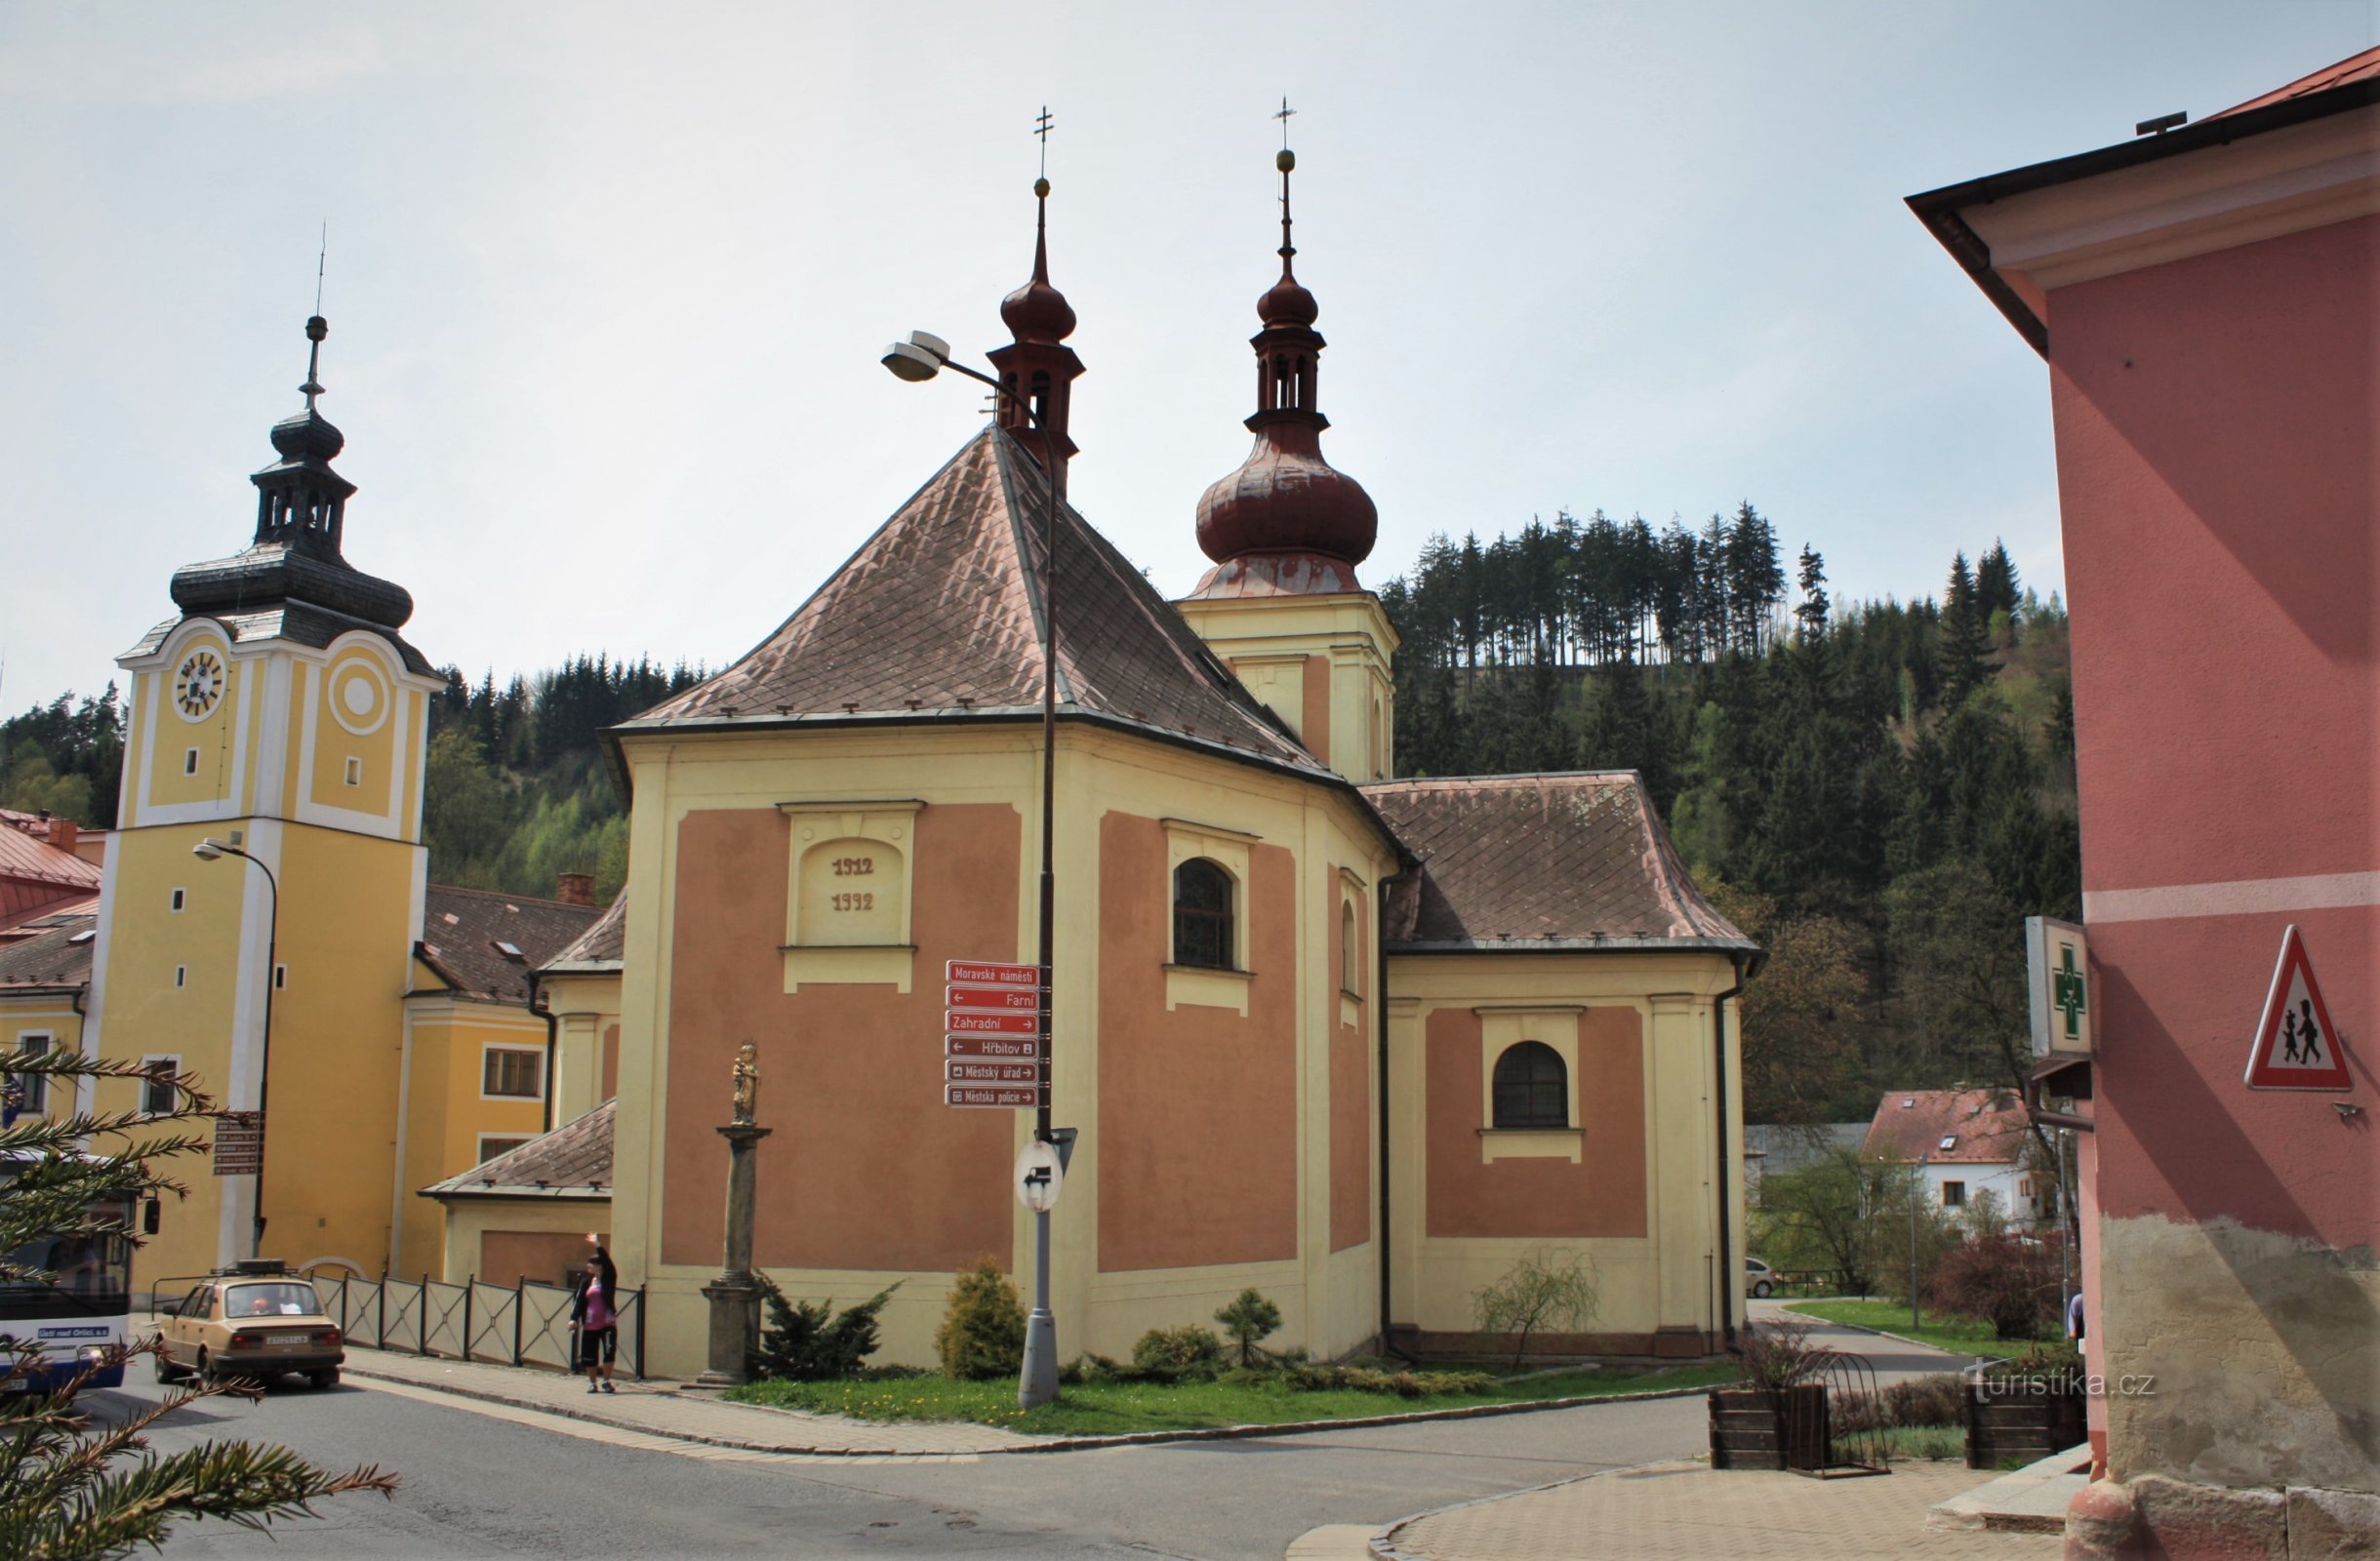 A Câmara Municipal e a Igreja de S. Bartolomeu